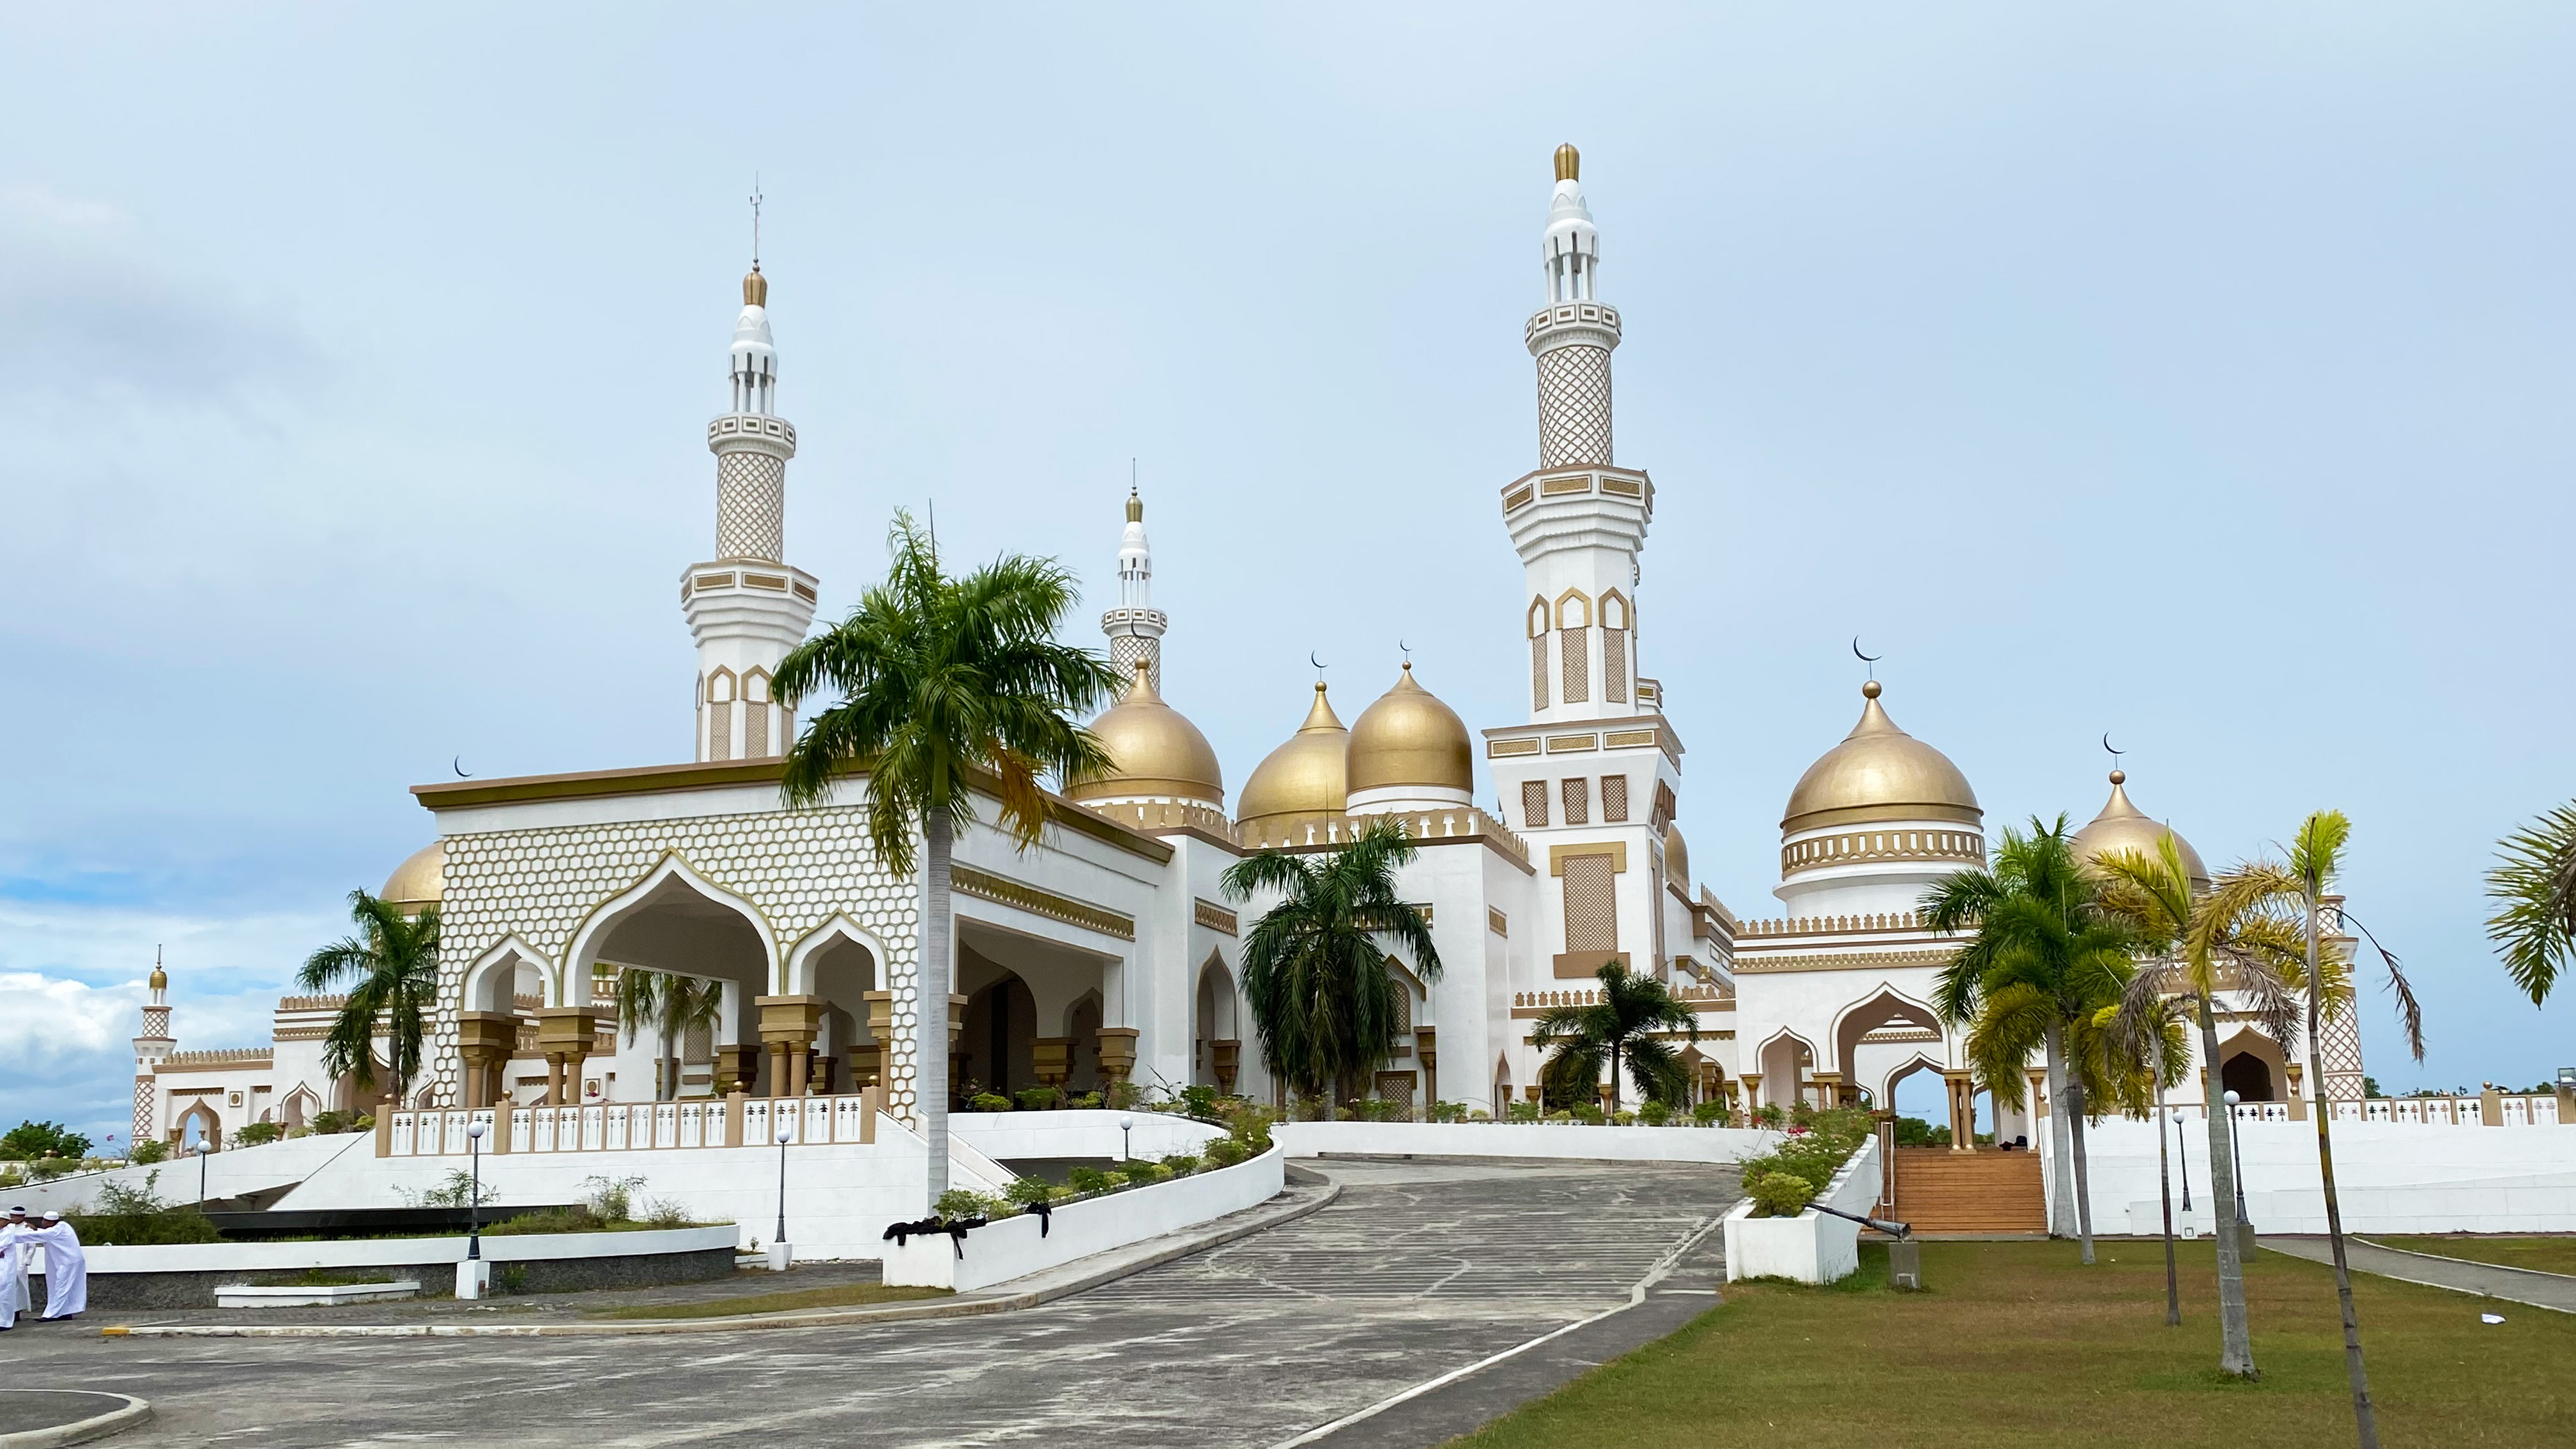 フィリピン・コタバト市内のグランド・モスク。バンサモロ・ムスリム・ミンダナオ自治地域はイスラム教徒が多い。